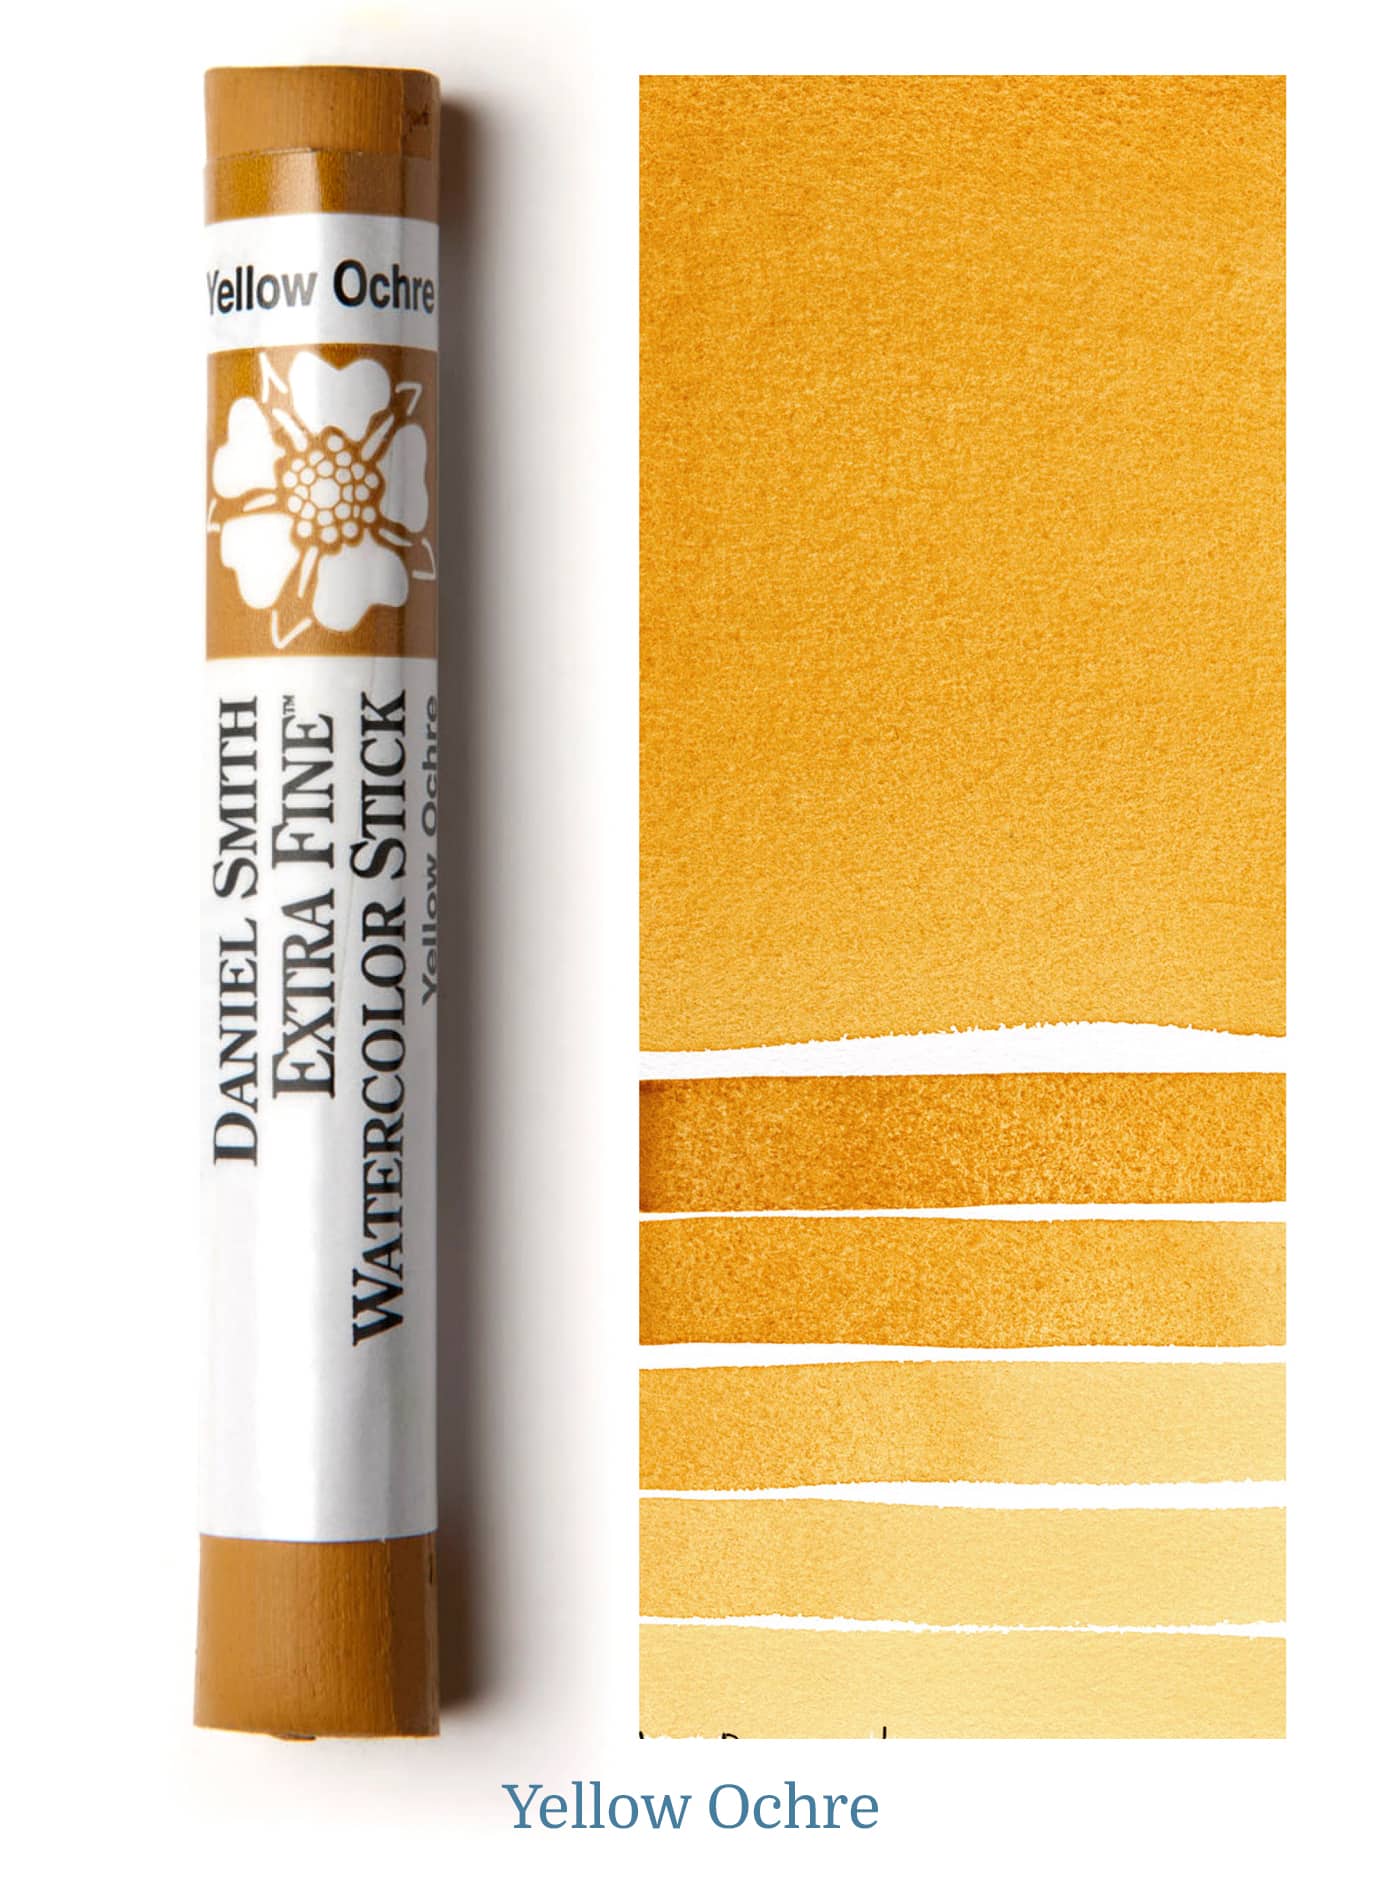 Daniel Smith Watercolor Stick - 3 inch - Yellow Ochre - merriartist.com